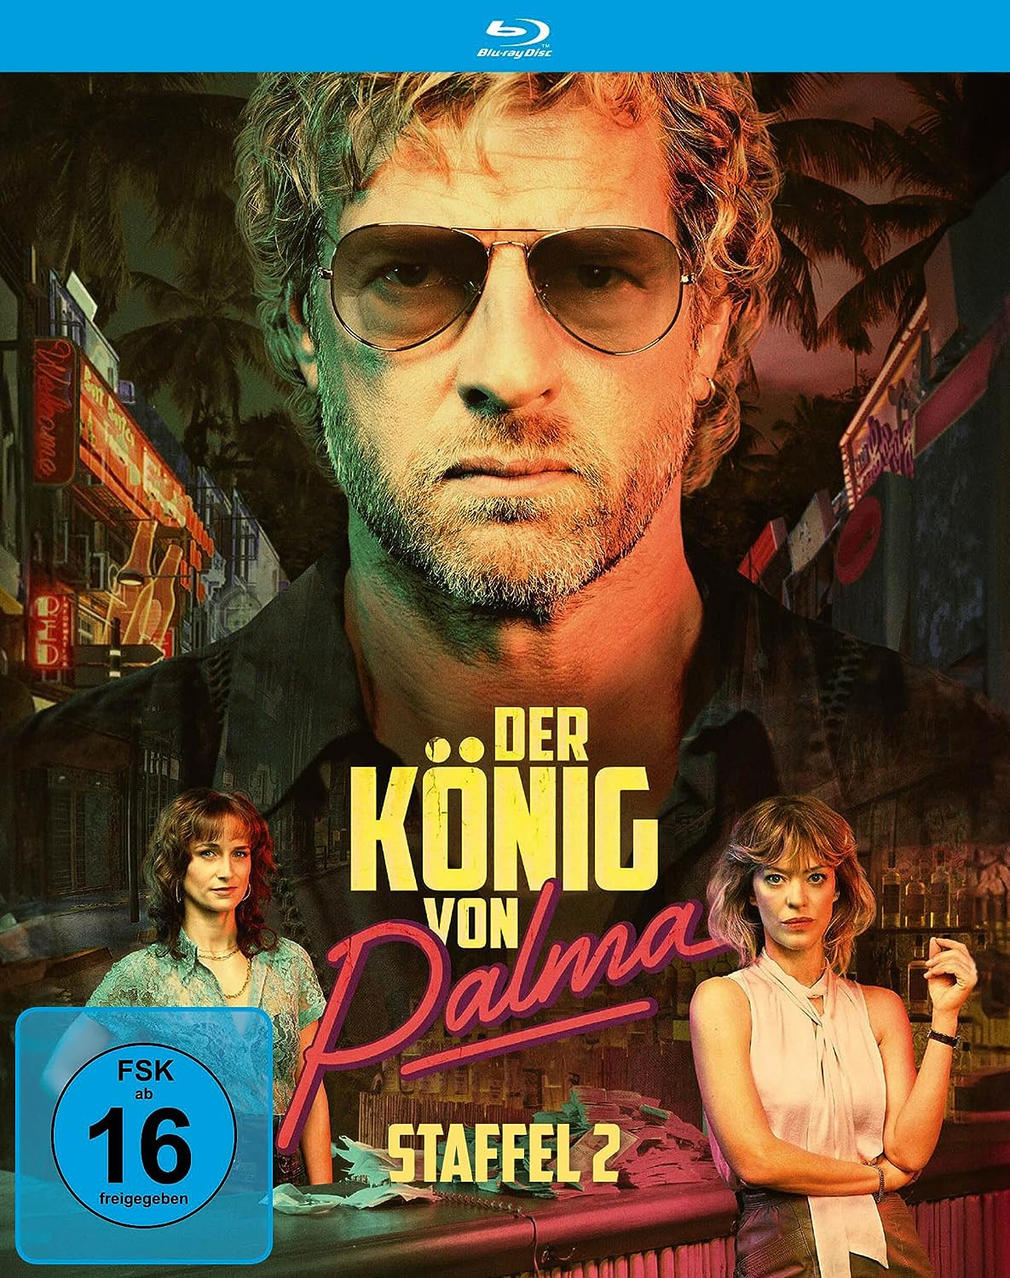 Staffel Koenig - Blu-ray Palma 2. Der von